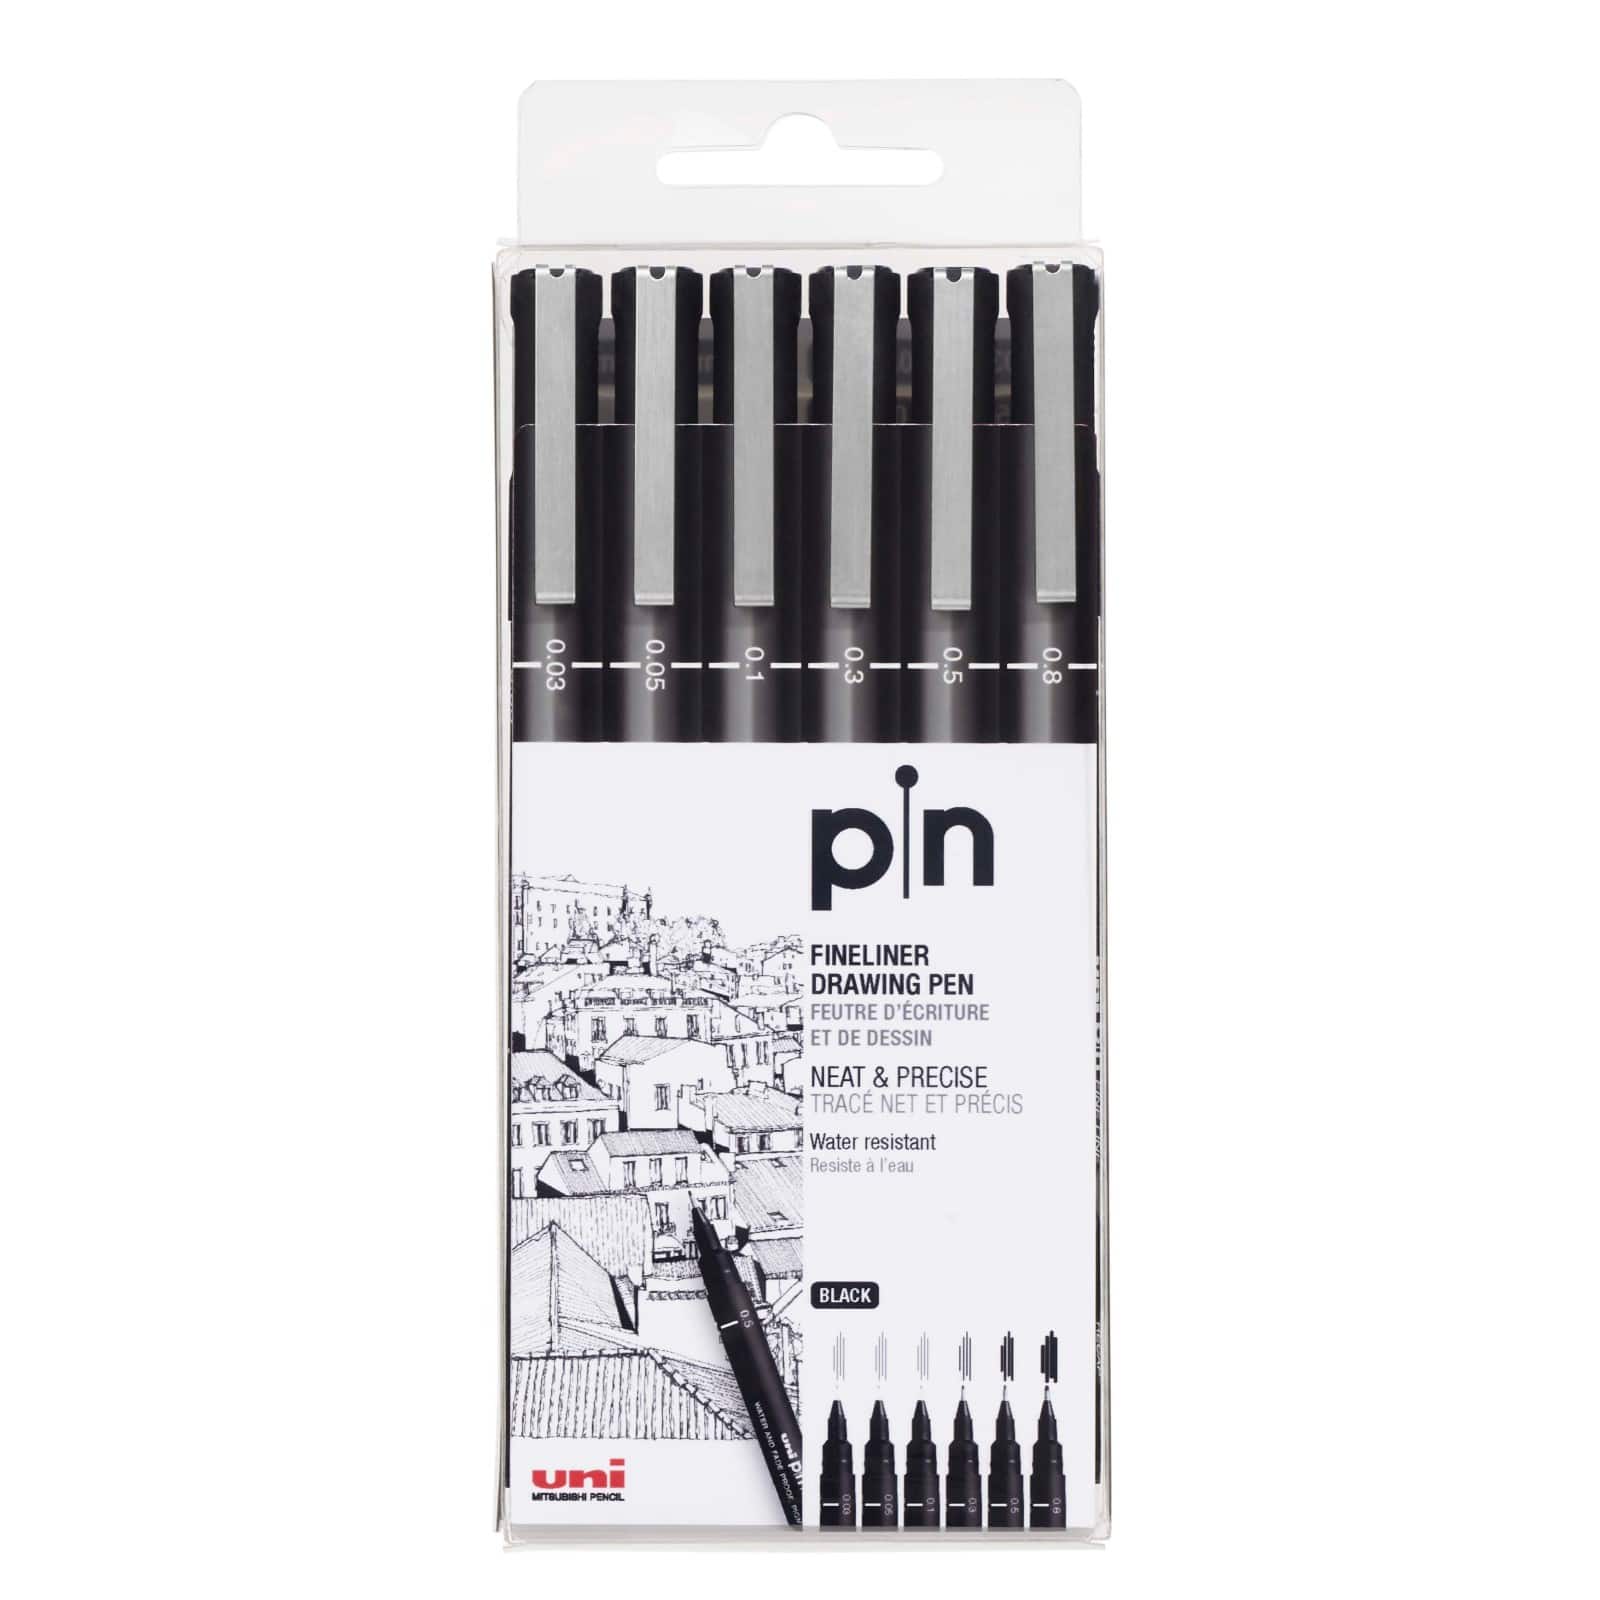 Online promotion fineliner pen